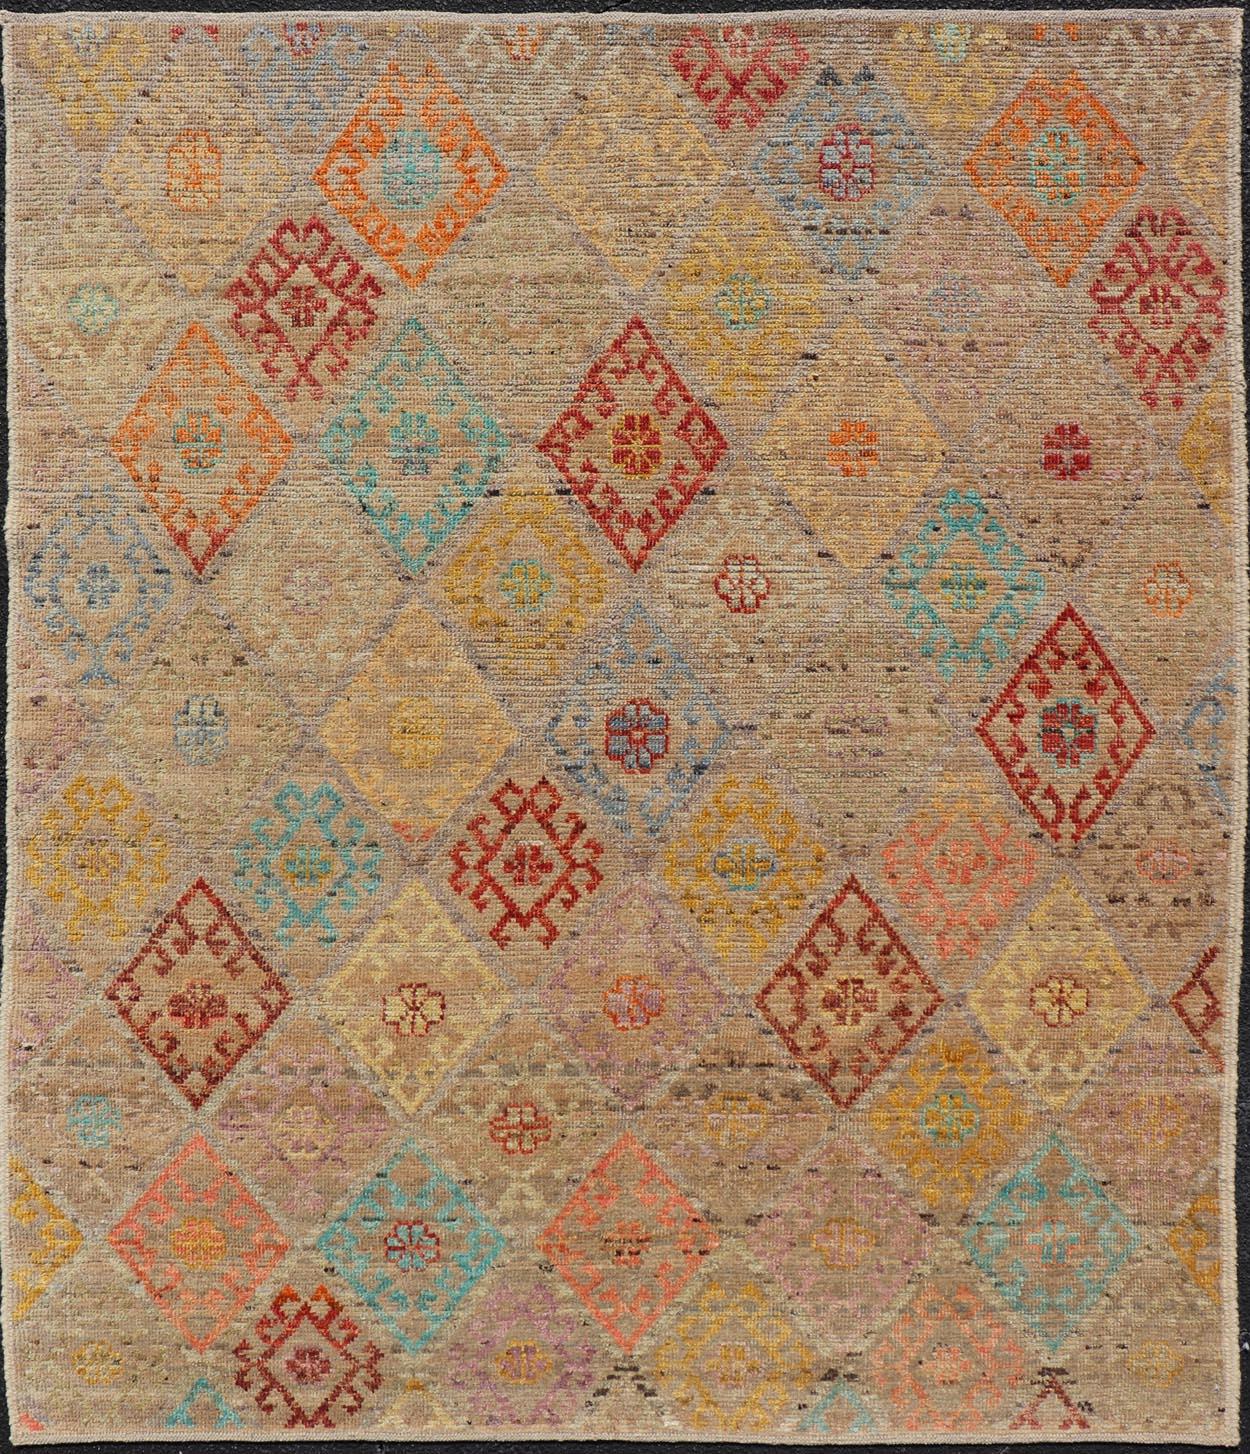 Moderner Stammesteppich aus Wolle mit subgeometrischem Rautenmuster in verschiedenen Farben